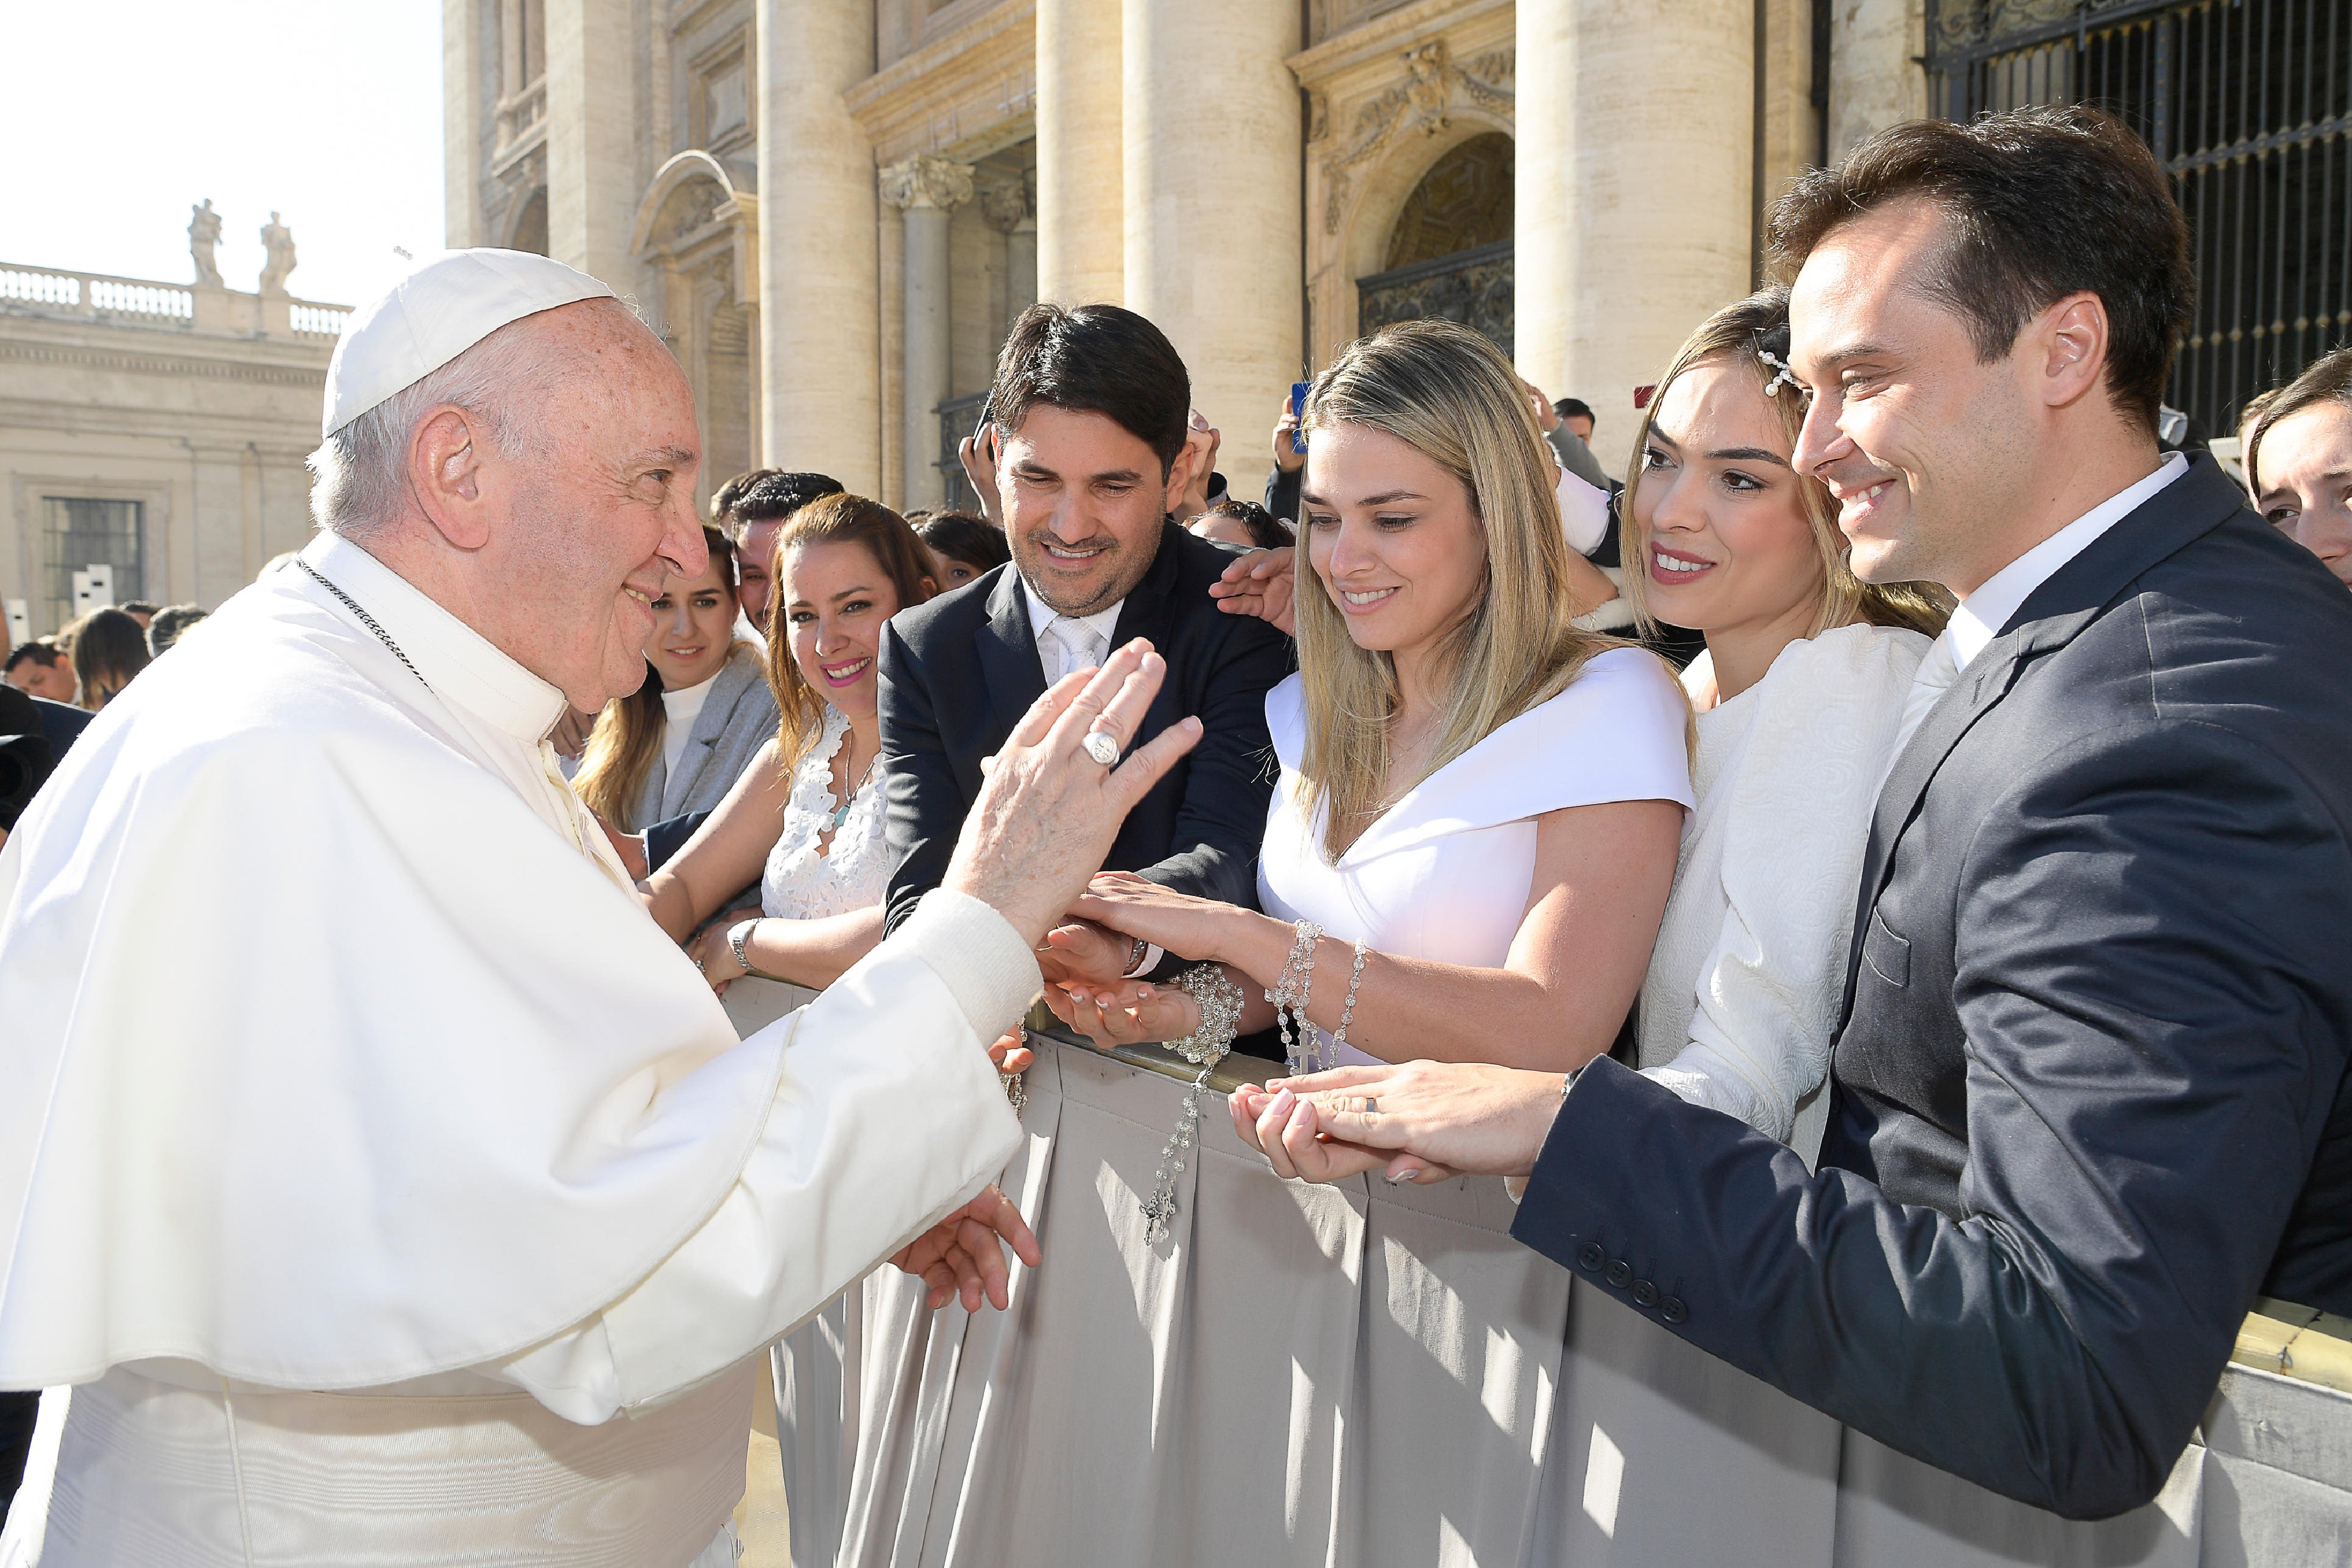 Le pape bénit les nouveaux mariés 22/11/2017 © L'Osservatore Romano